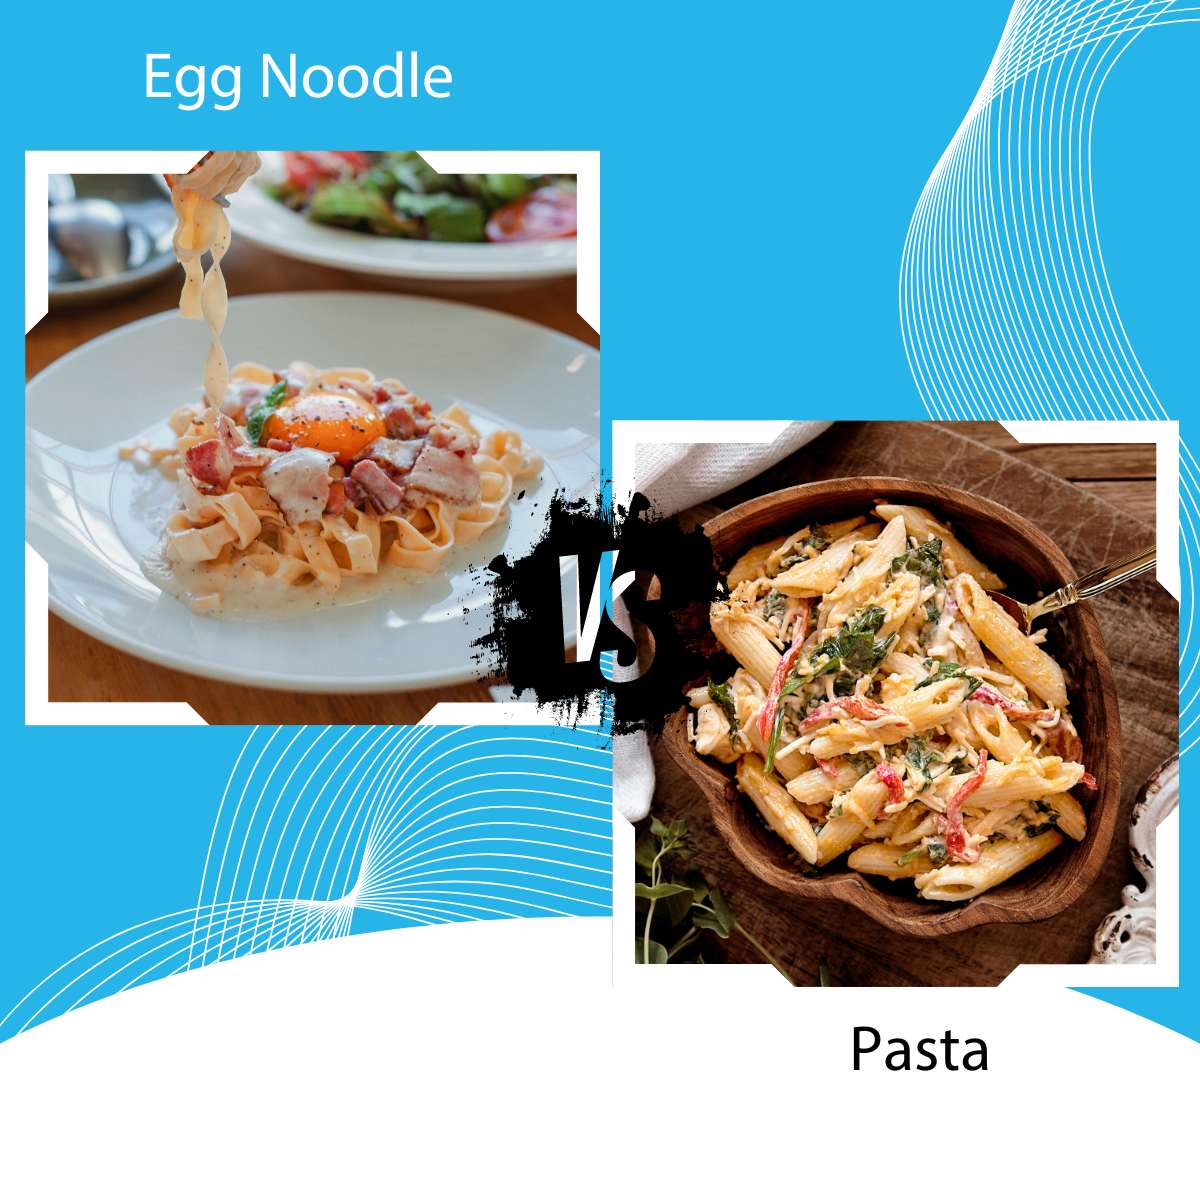 Egg Noodle vs Pasta